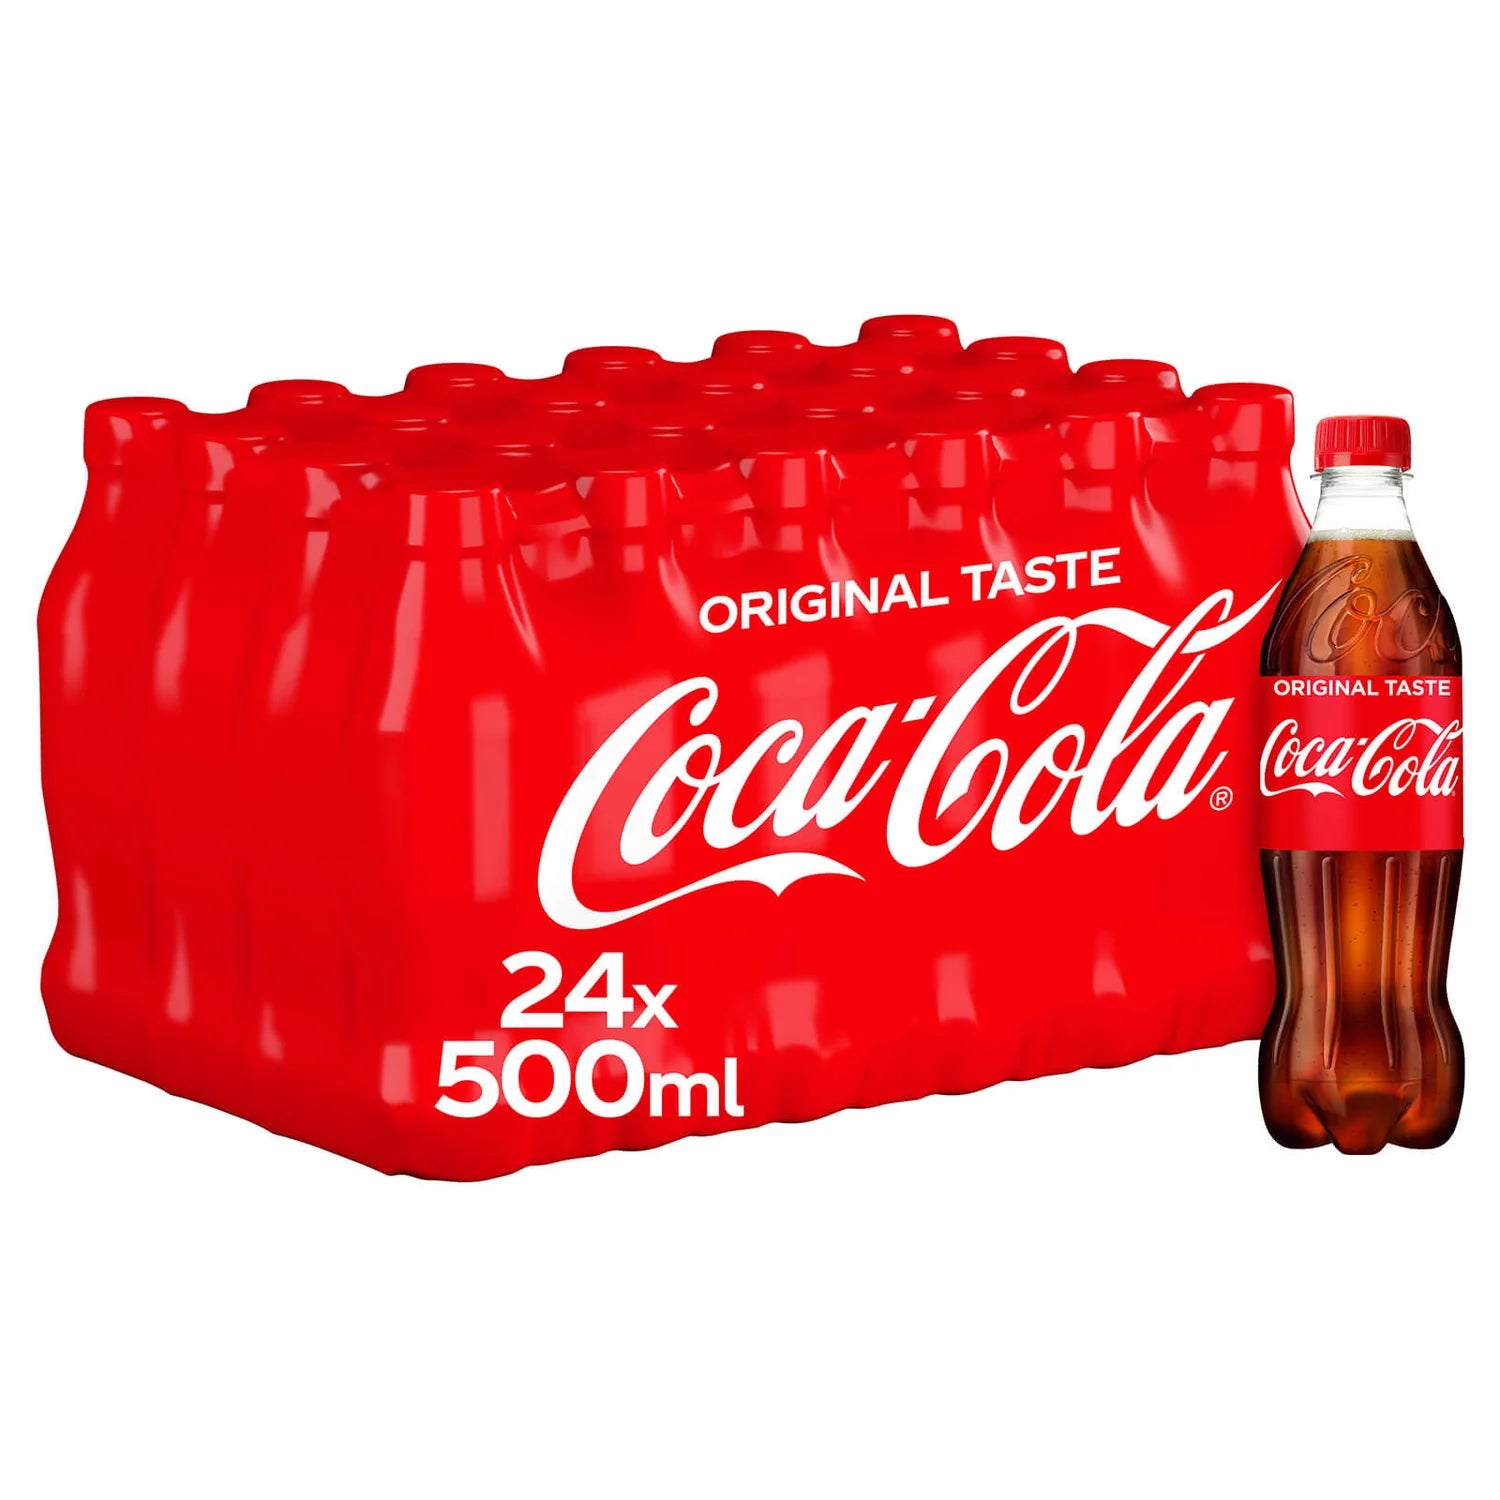 Coca-Cola Original Taste - 500ml - Case of 24